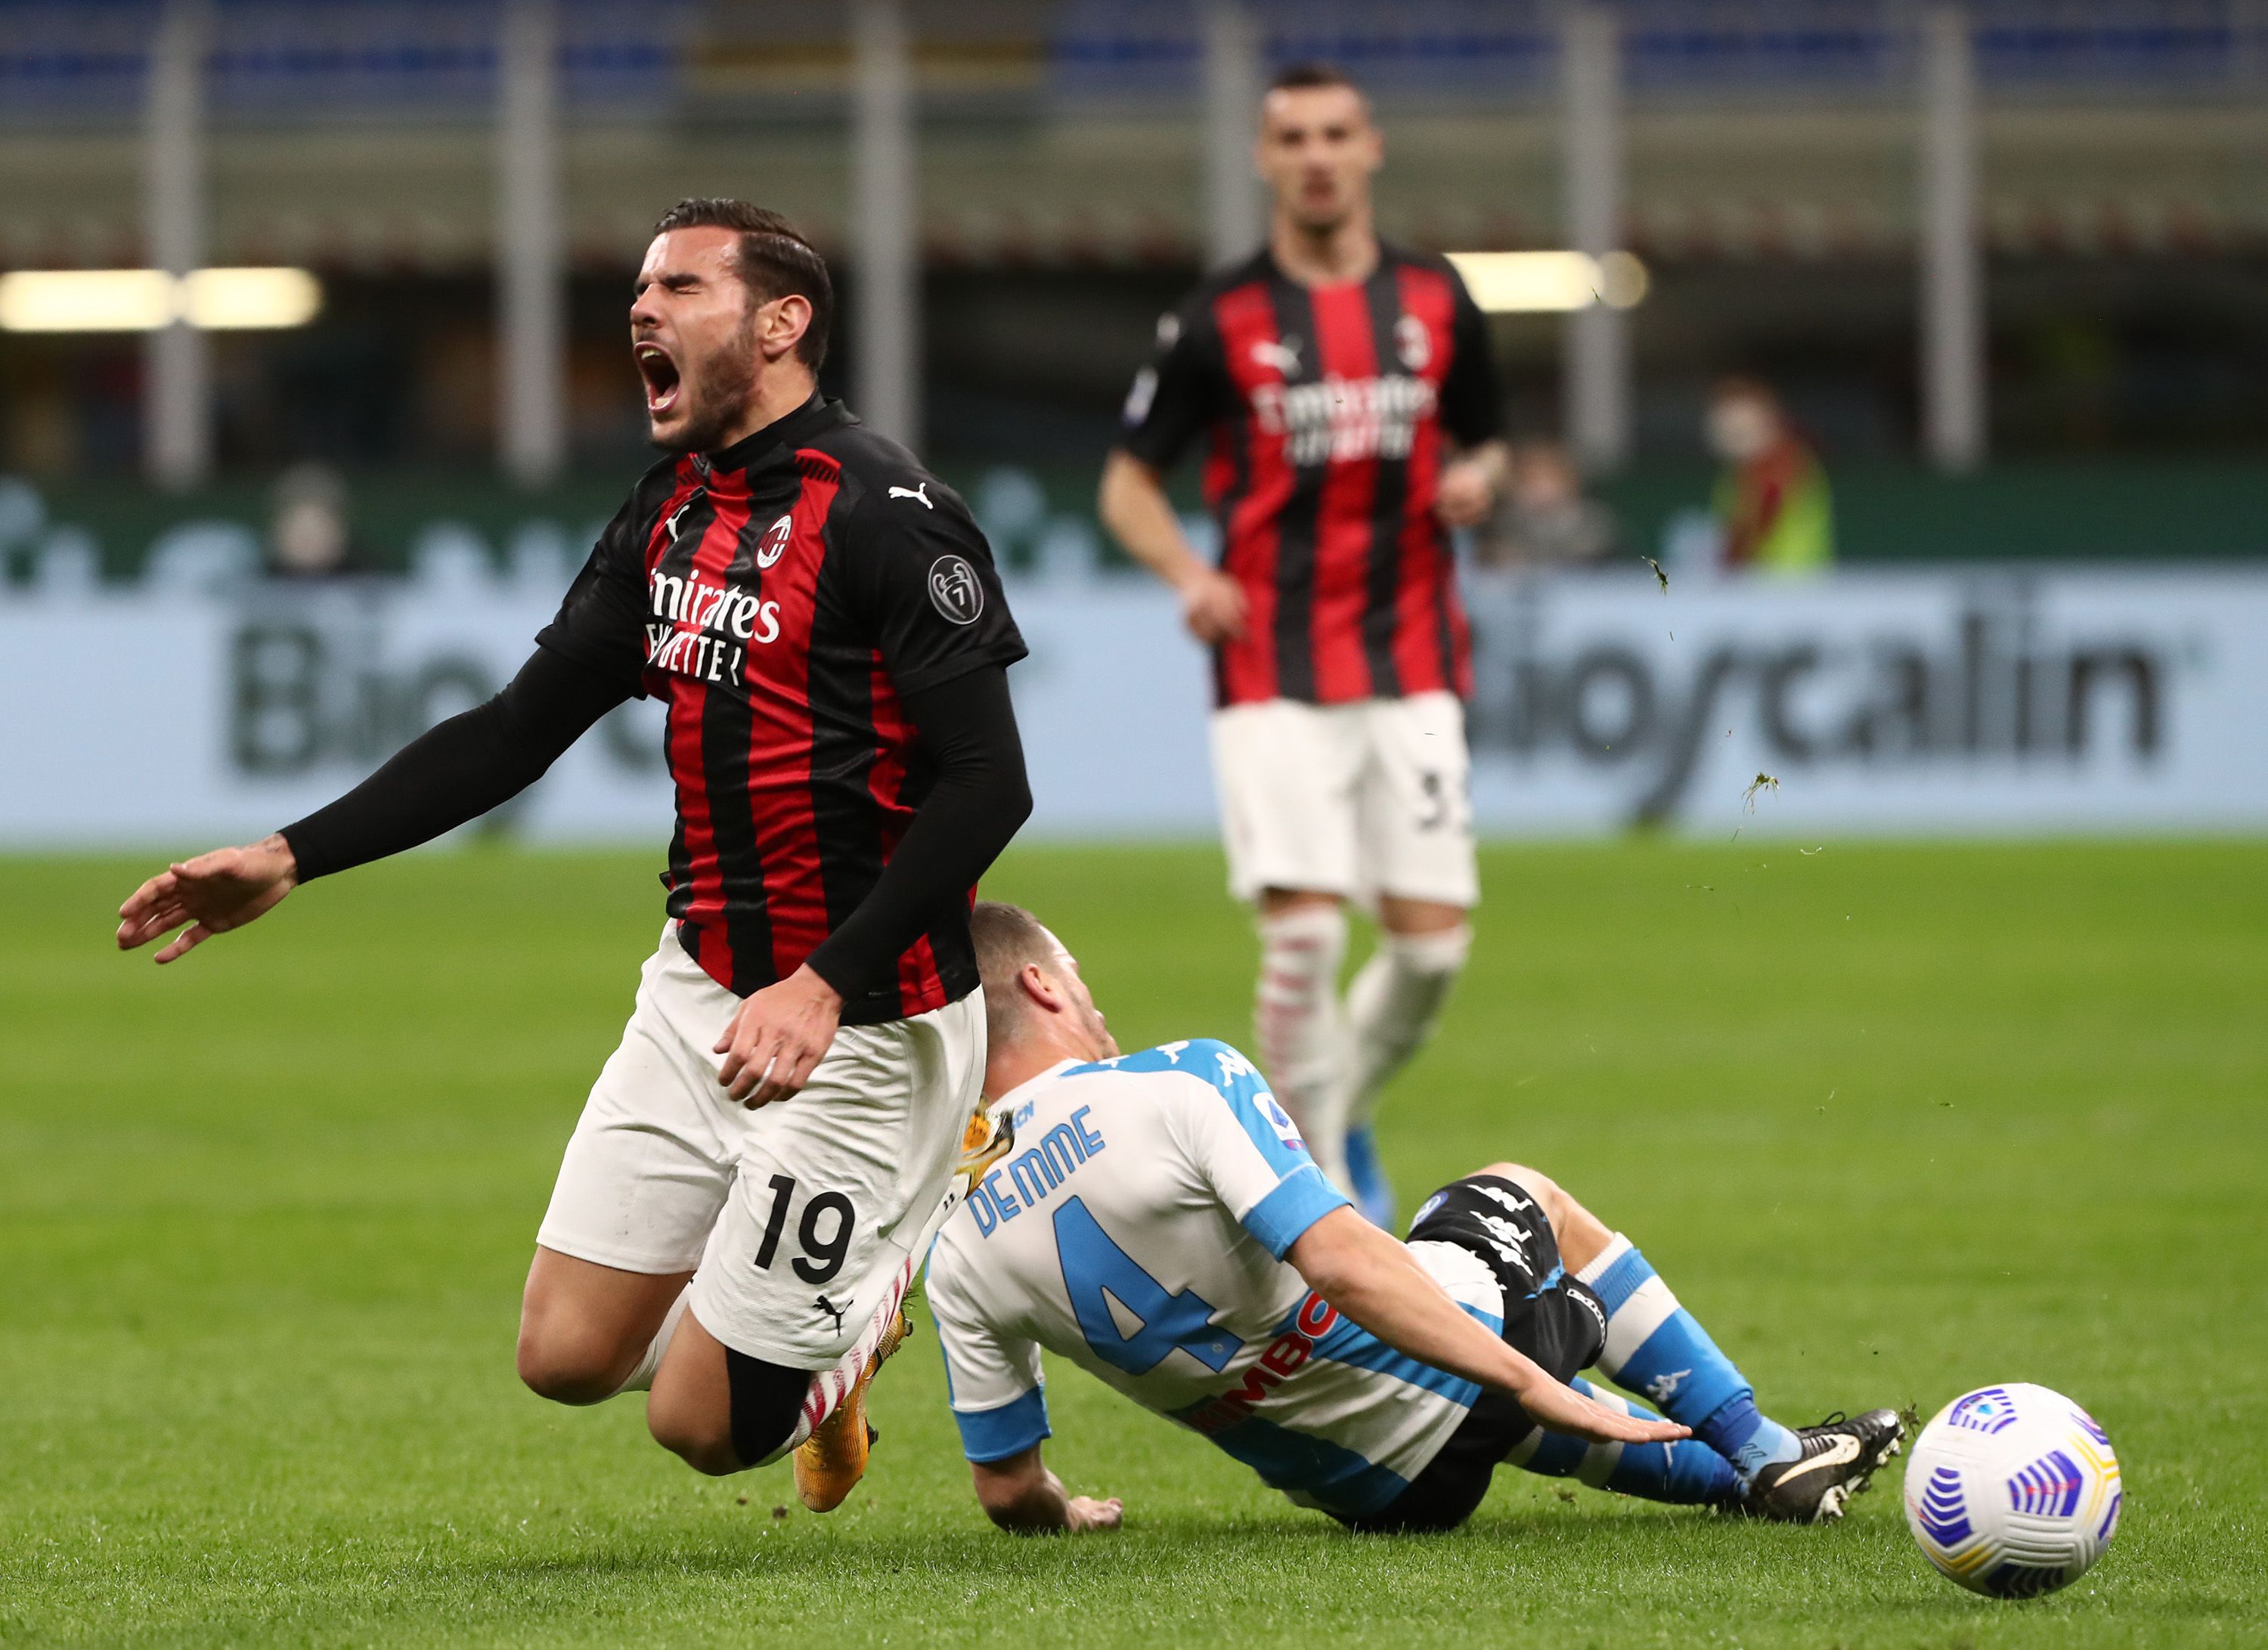 La derrota del Milan ante el Napoli condenó aún más al Rossonero en la tabla de posiciones. (Foto: Getty)